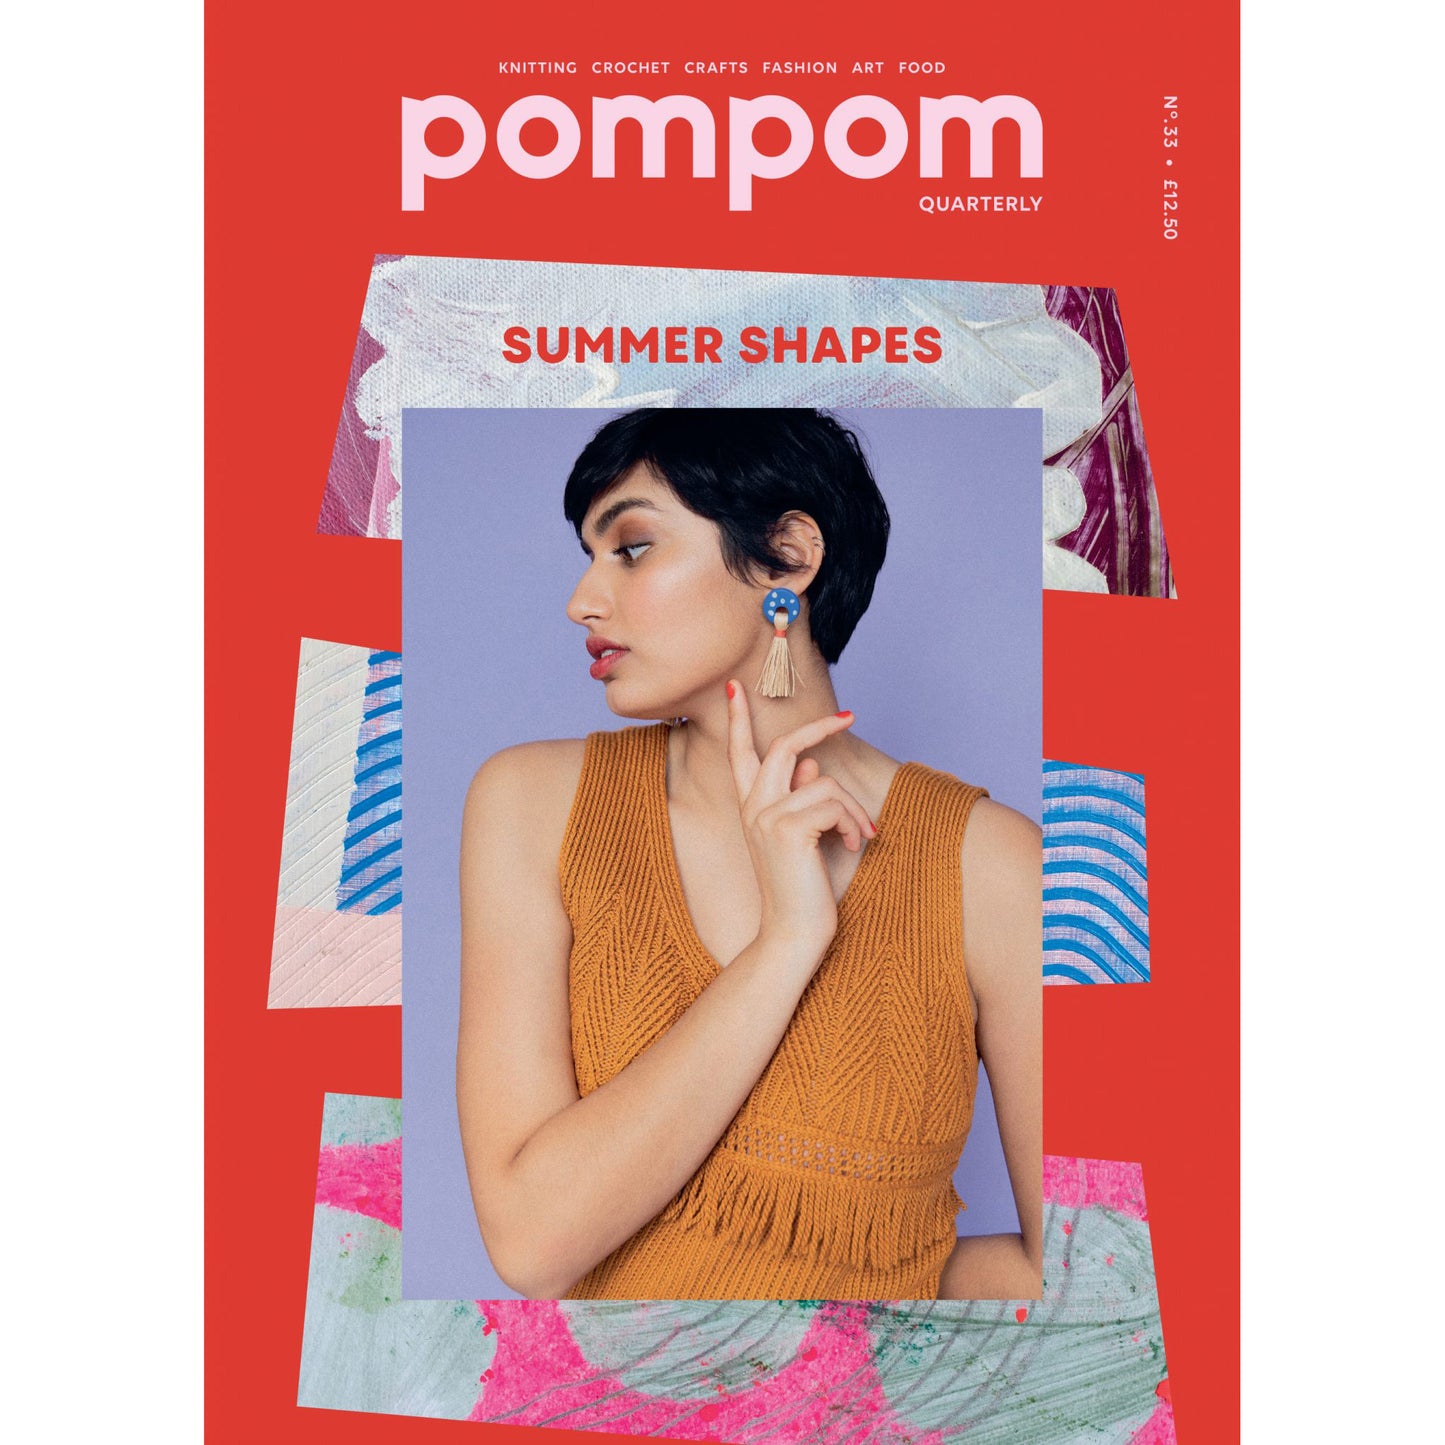 pom pom quarterly - Issue 33 - Summer 2020